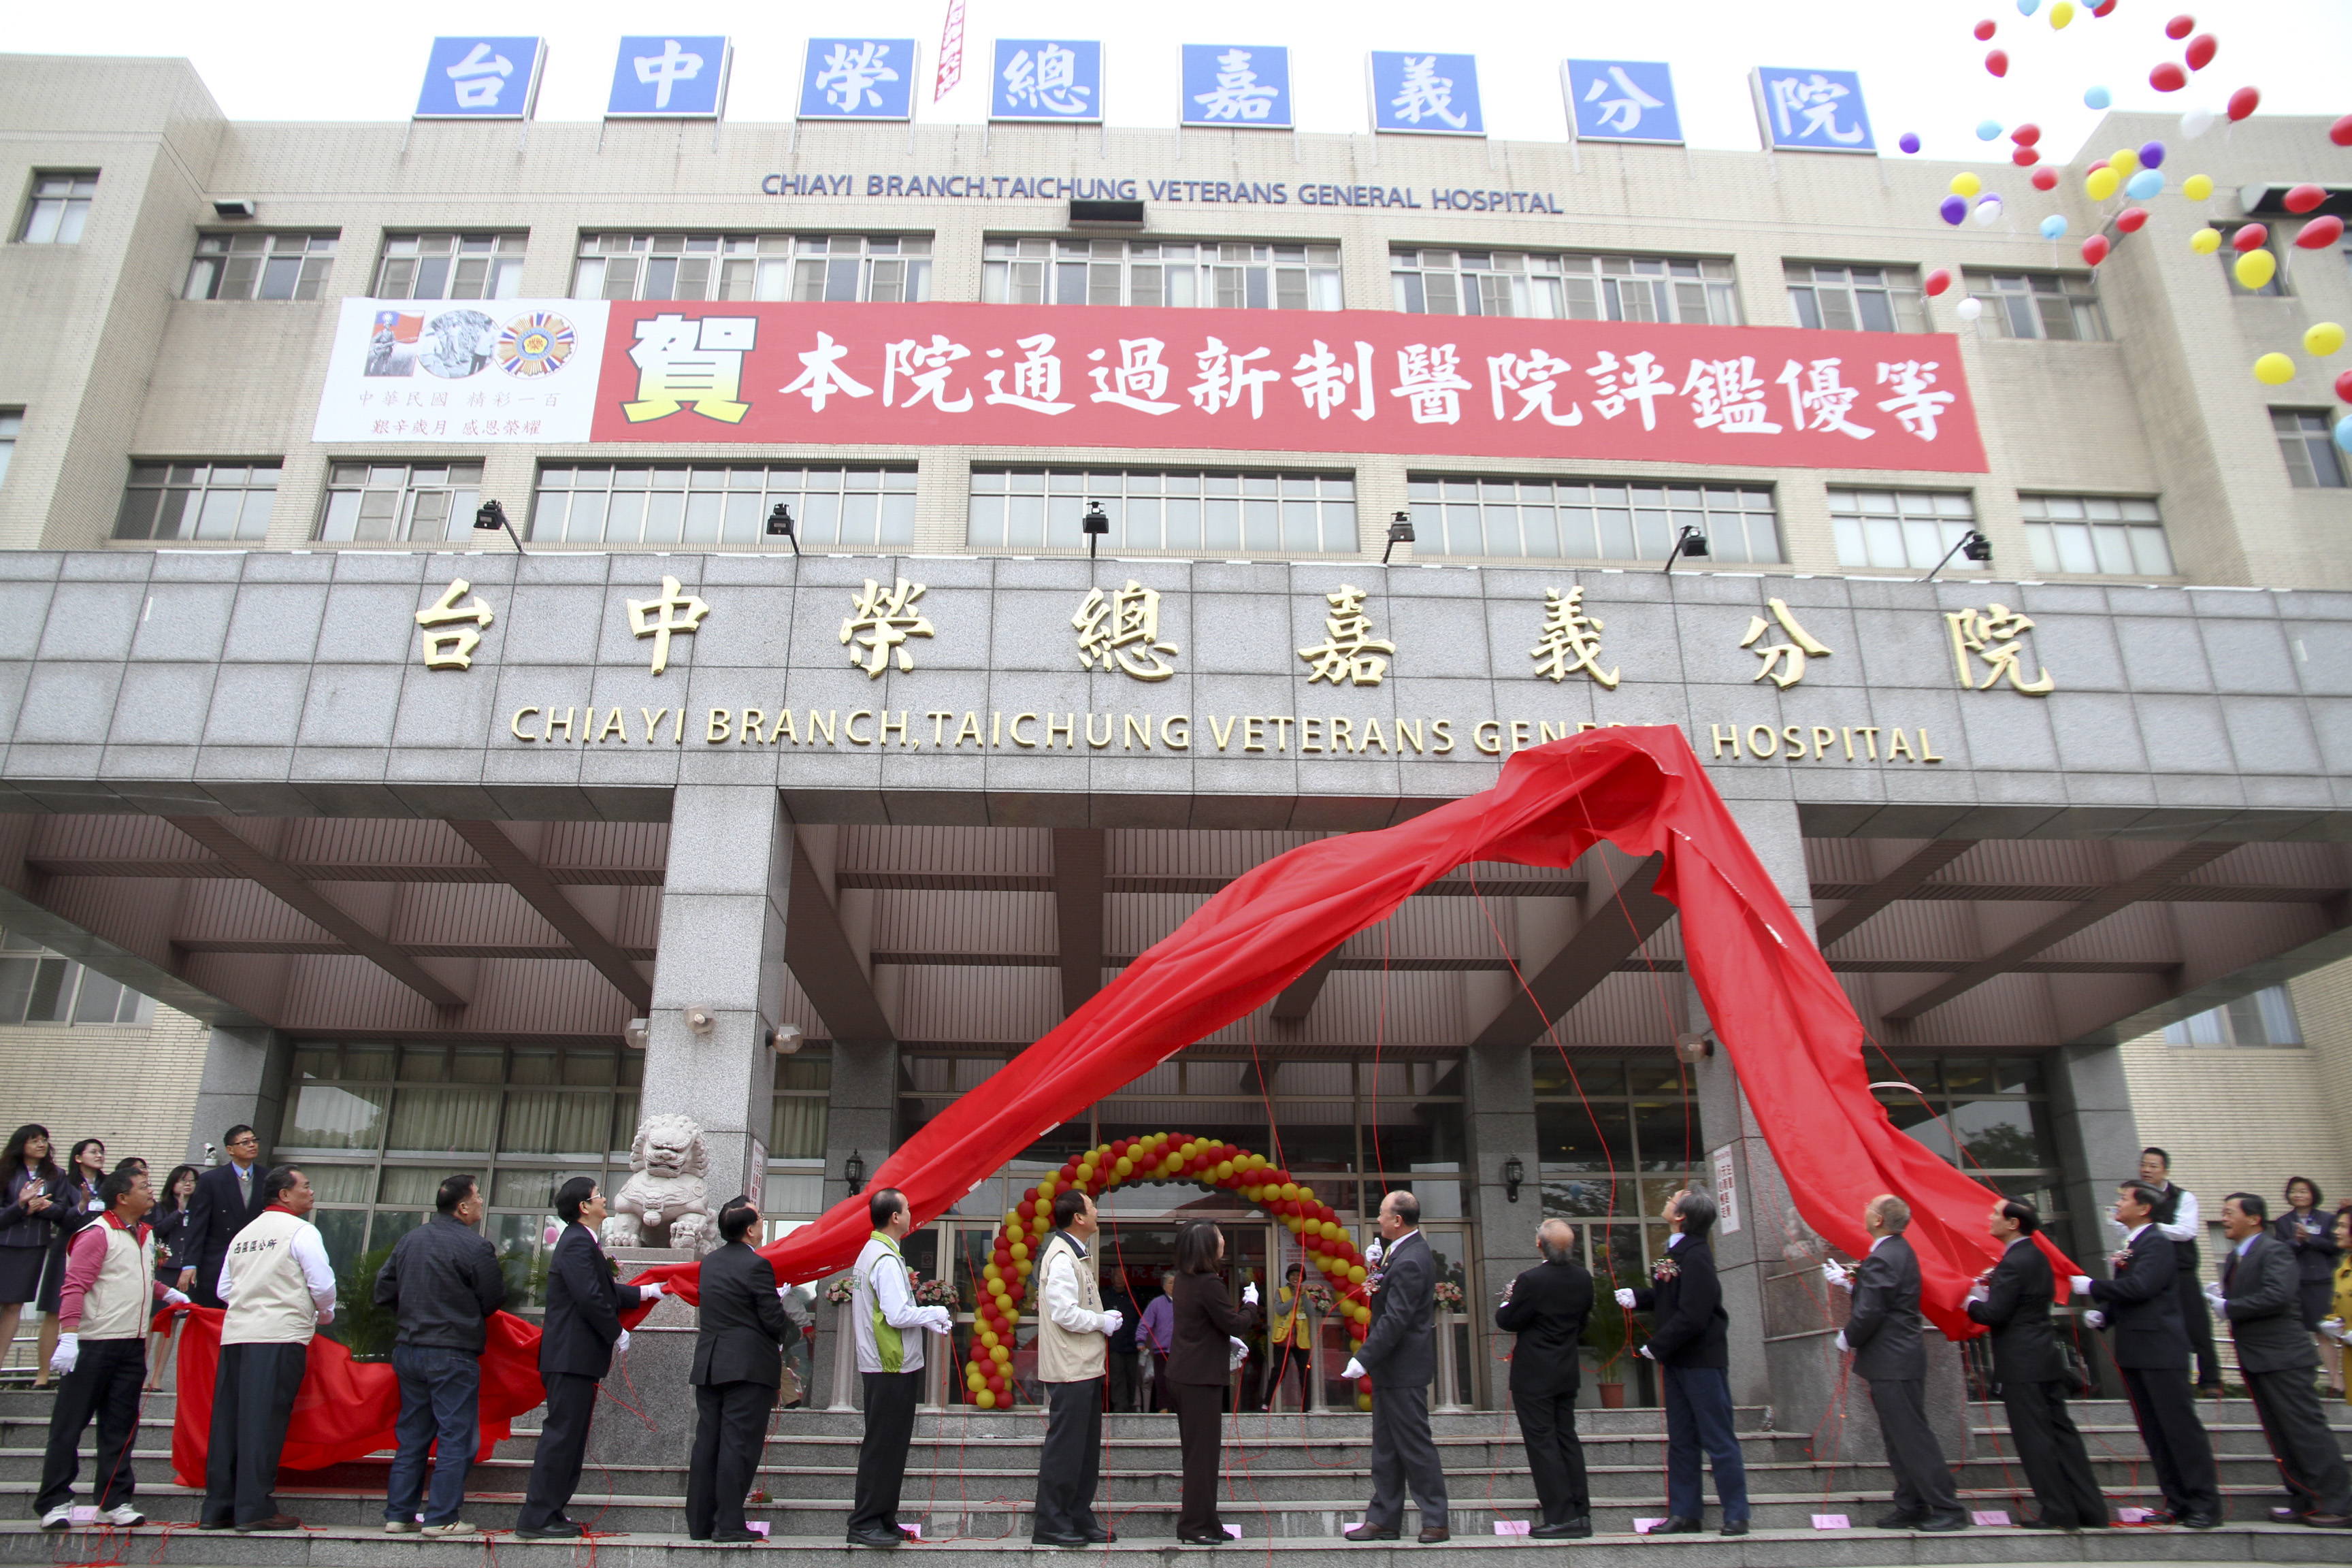 嘉義榮民醫院改隸為「臺中榮民總醫院嘉義分院」揭牌。